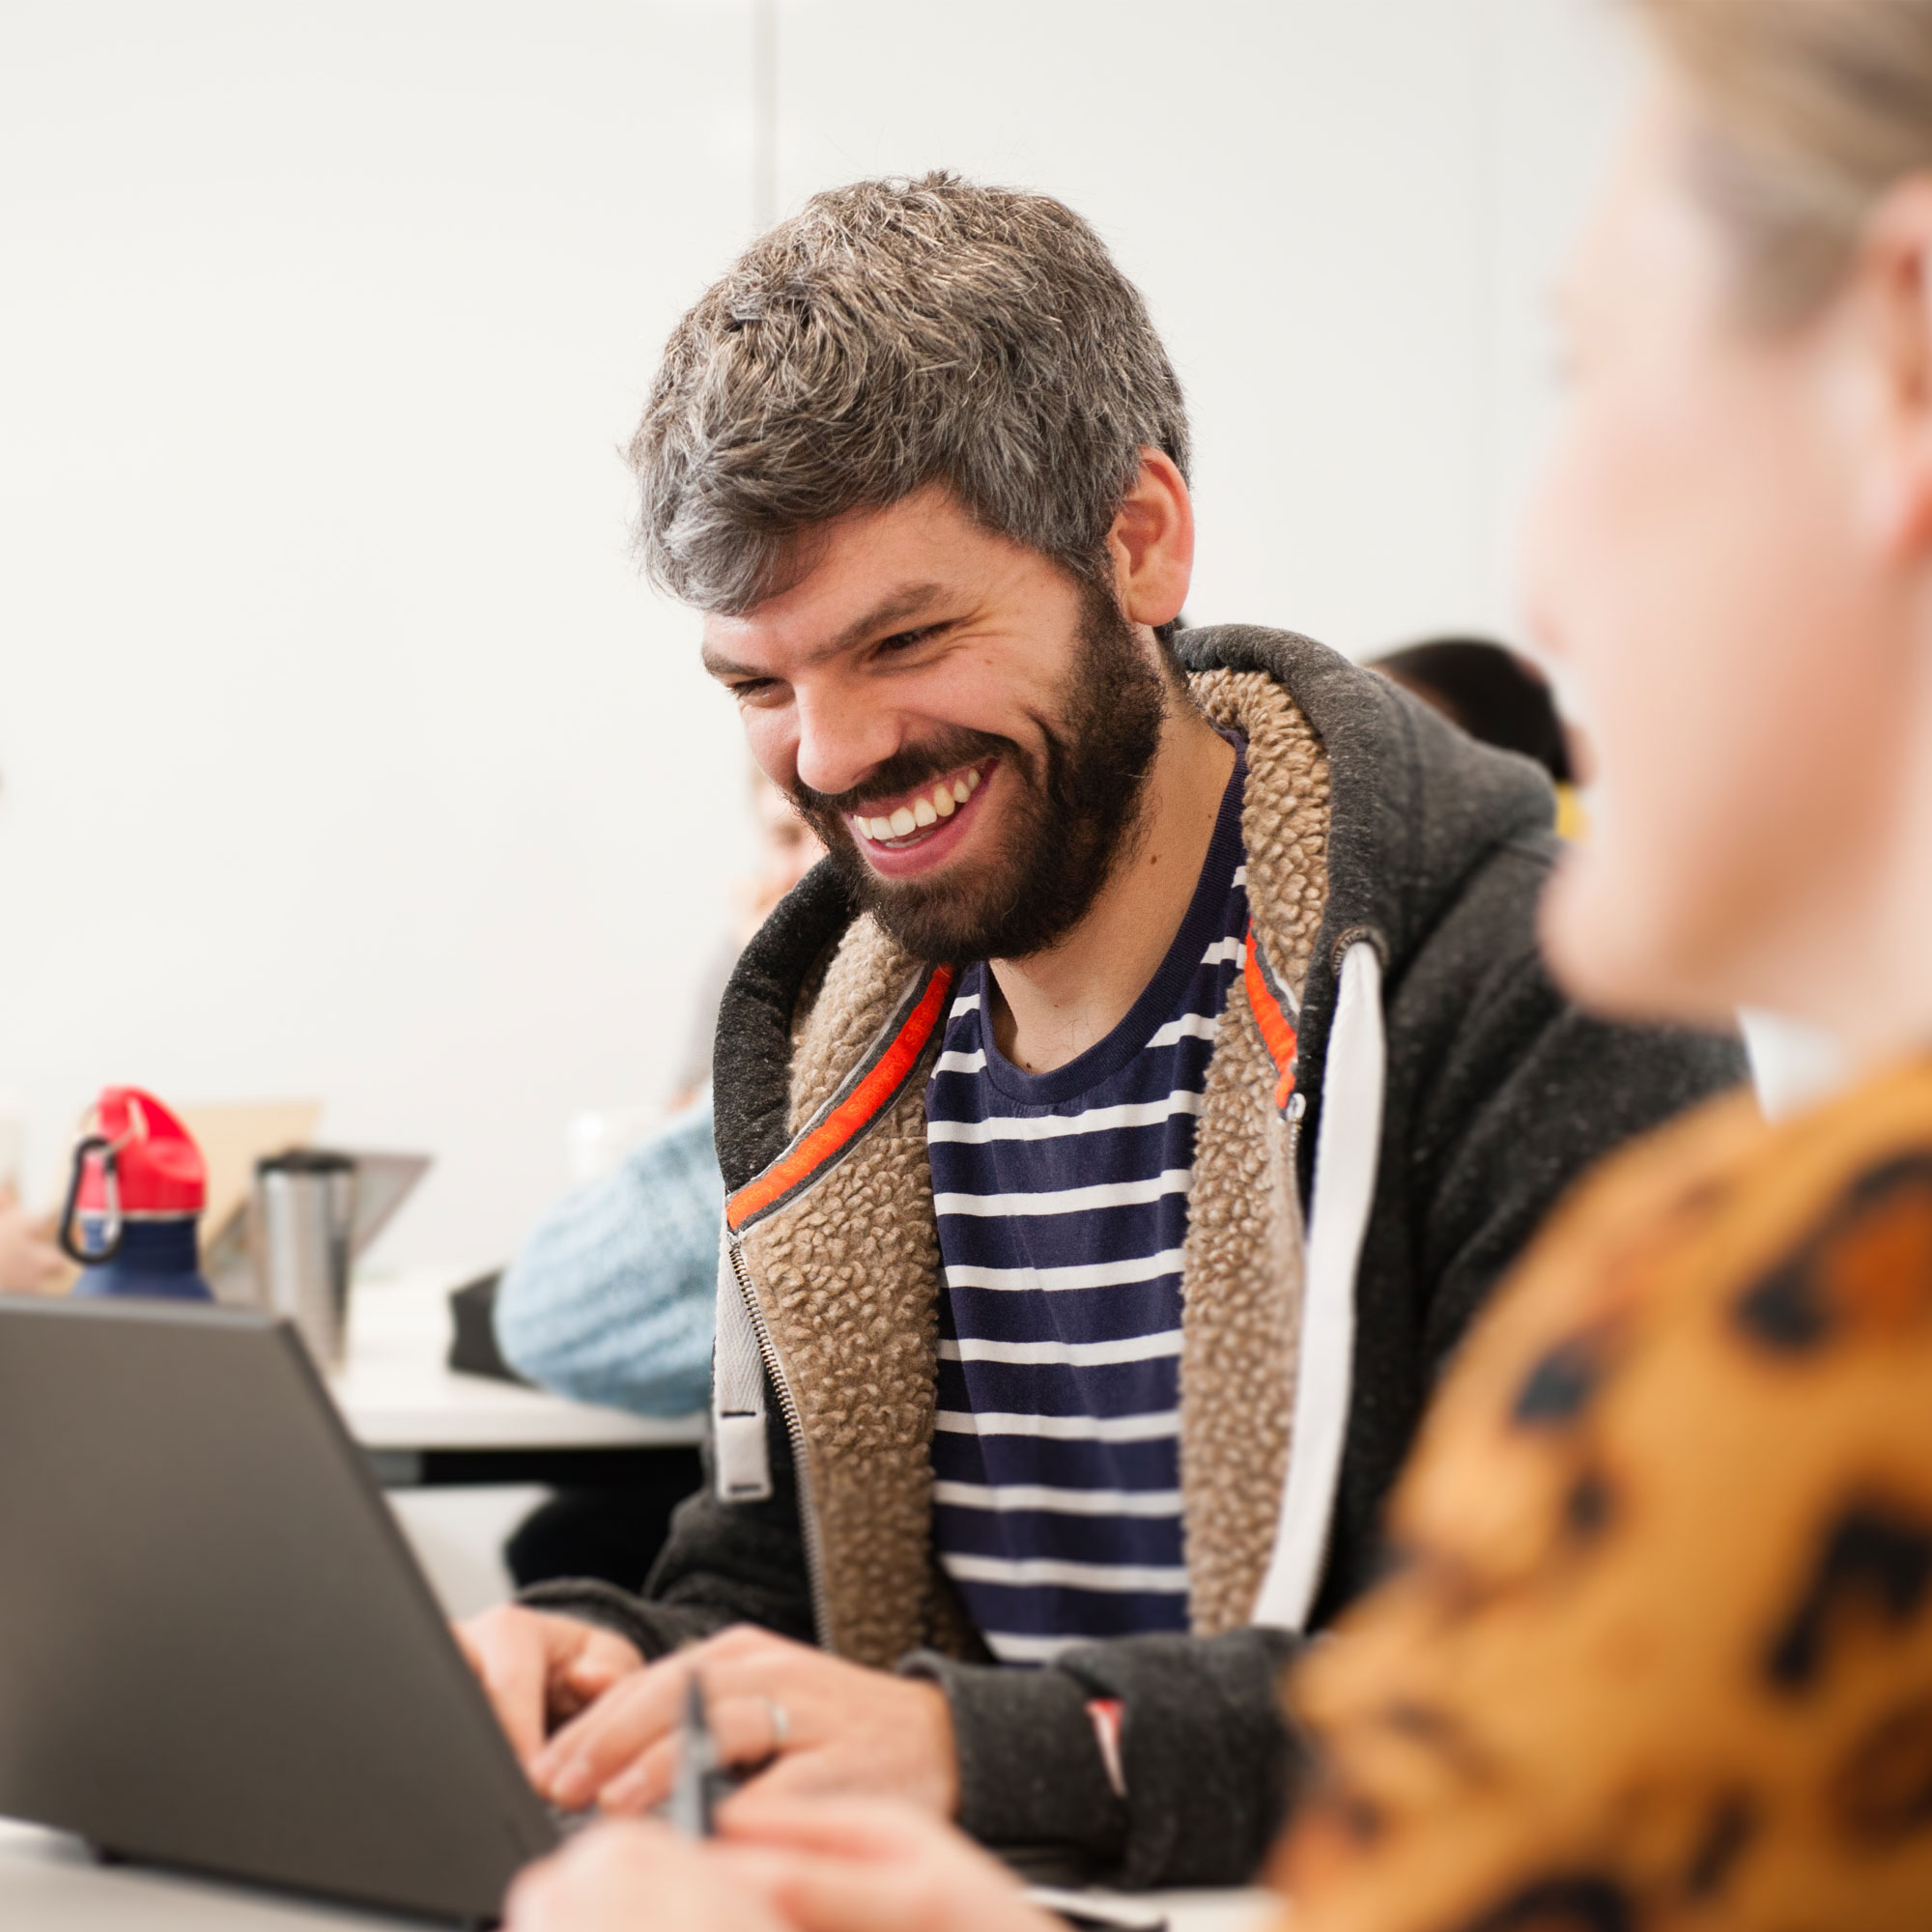 Estudiante de aprendizaje sonriendo mirando la computadora portátil